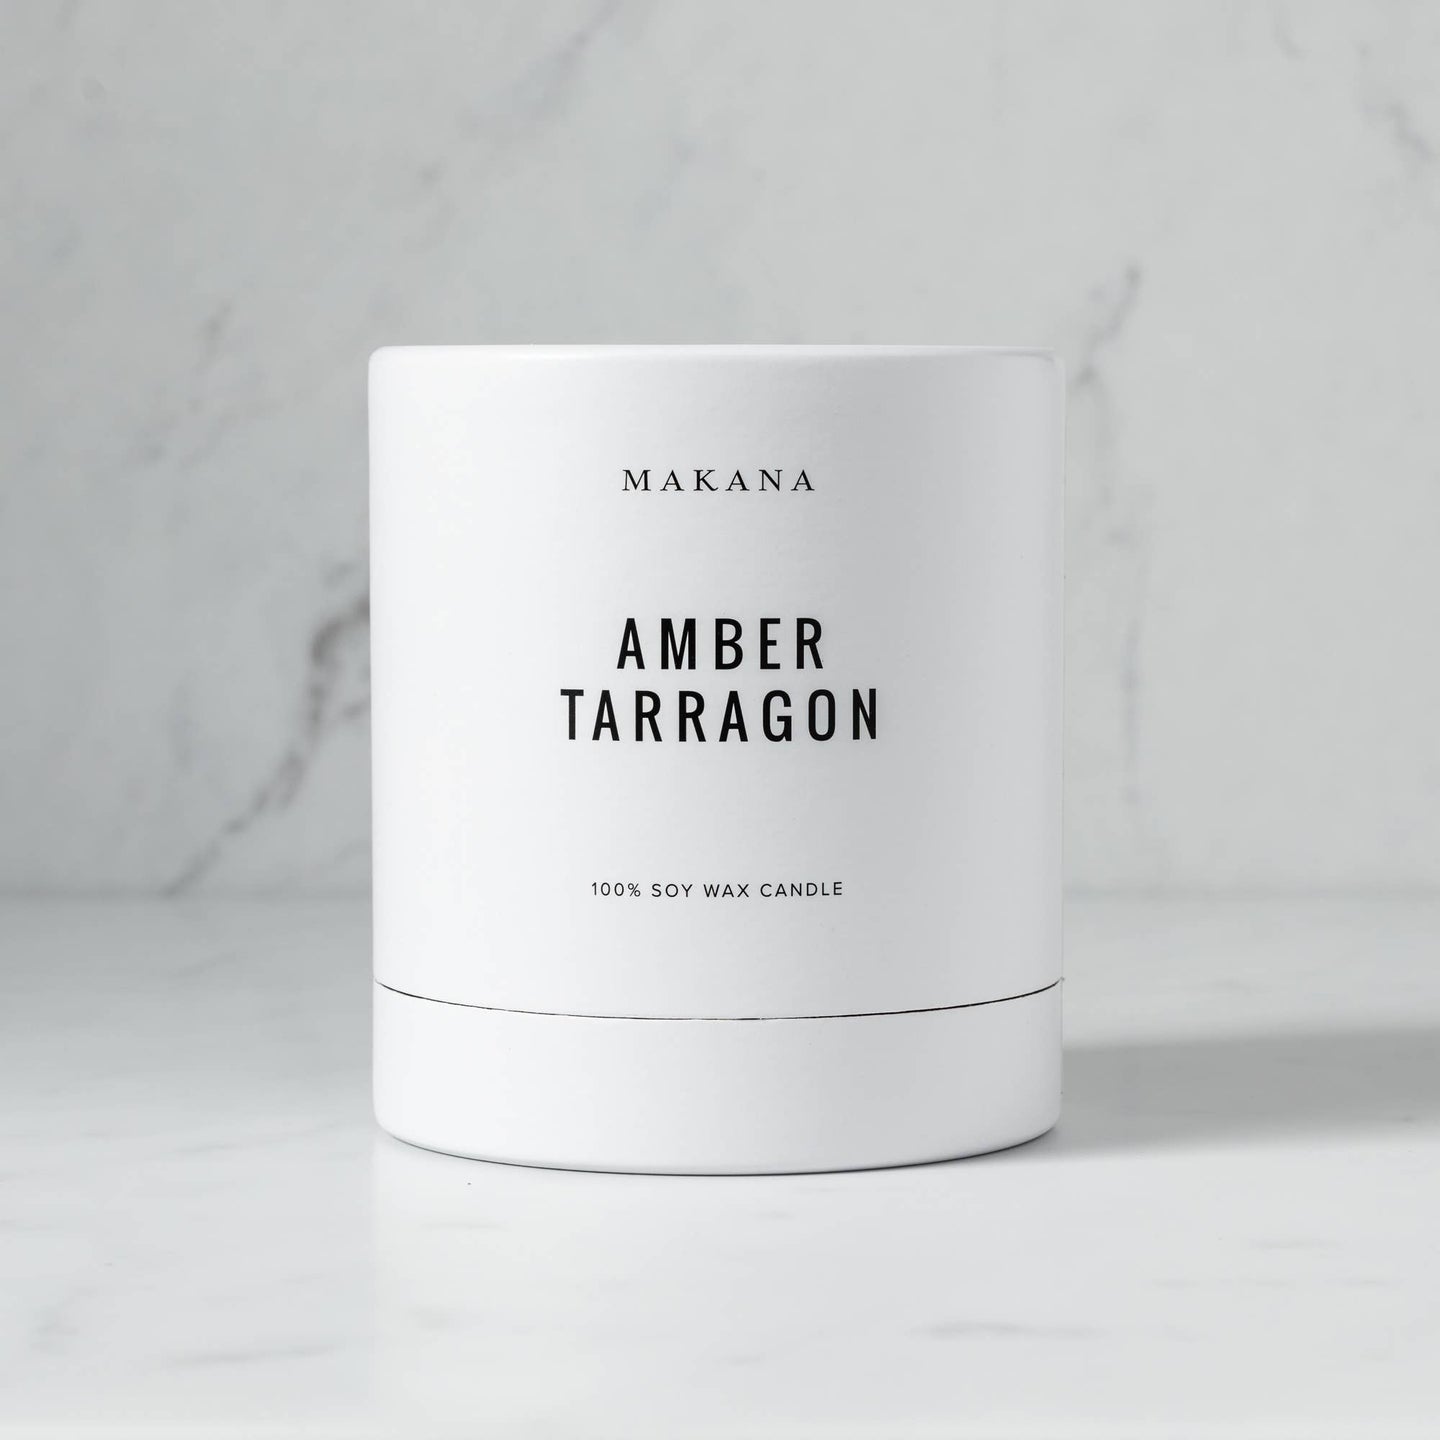 Amber Tarragon - Classic Candle 10 oz: 10 oz